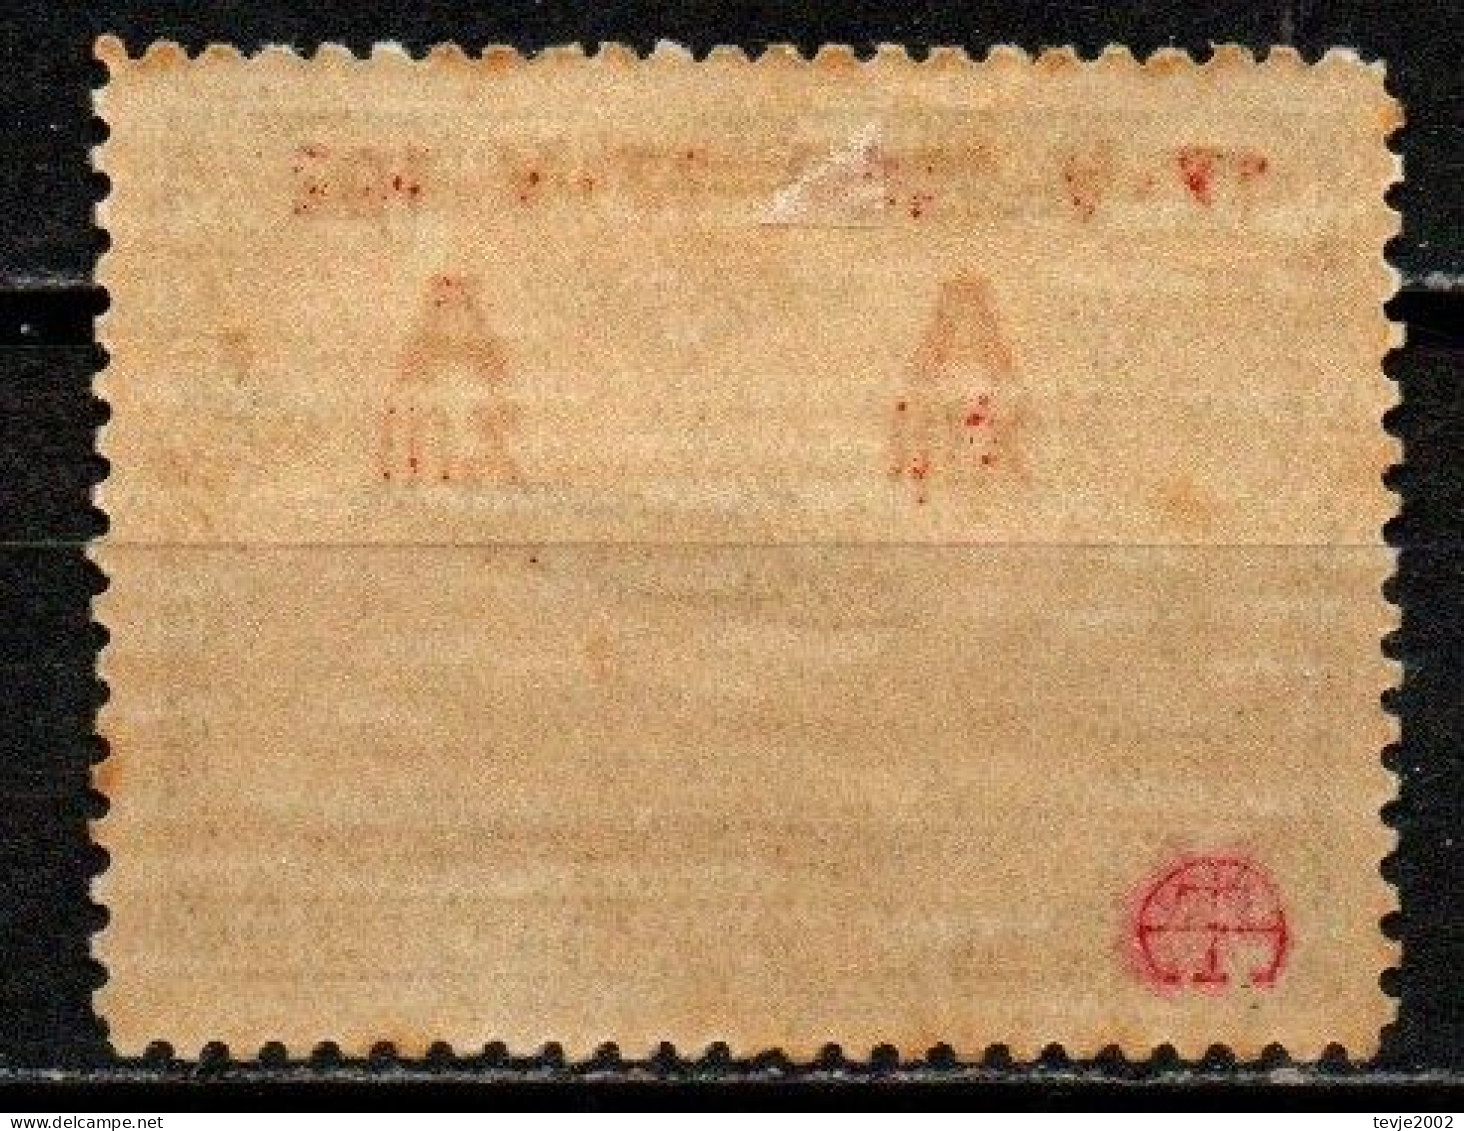 Spanien 1927 - Mi.Nr. 362 - Ungebraucht Mit Gummi Und Falzspuren MH - Unused Stamps